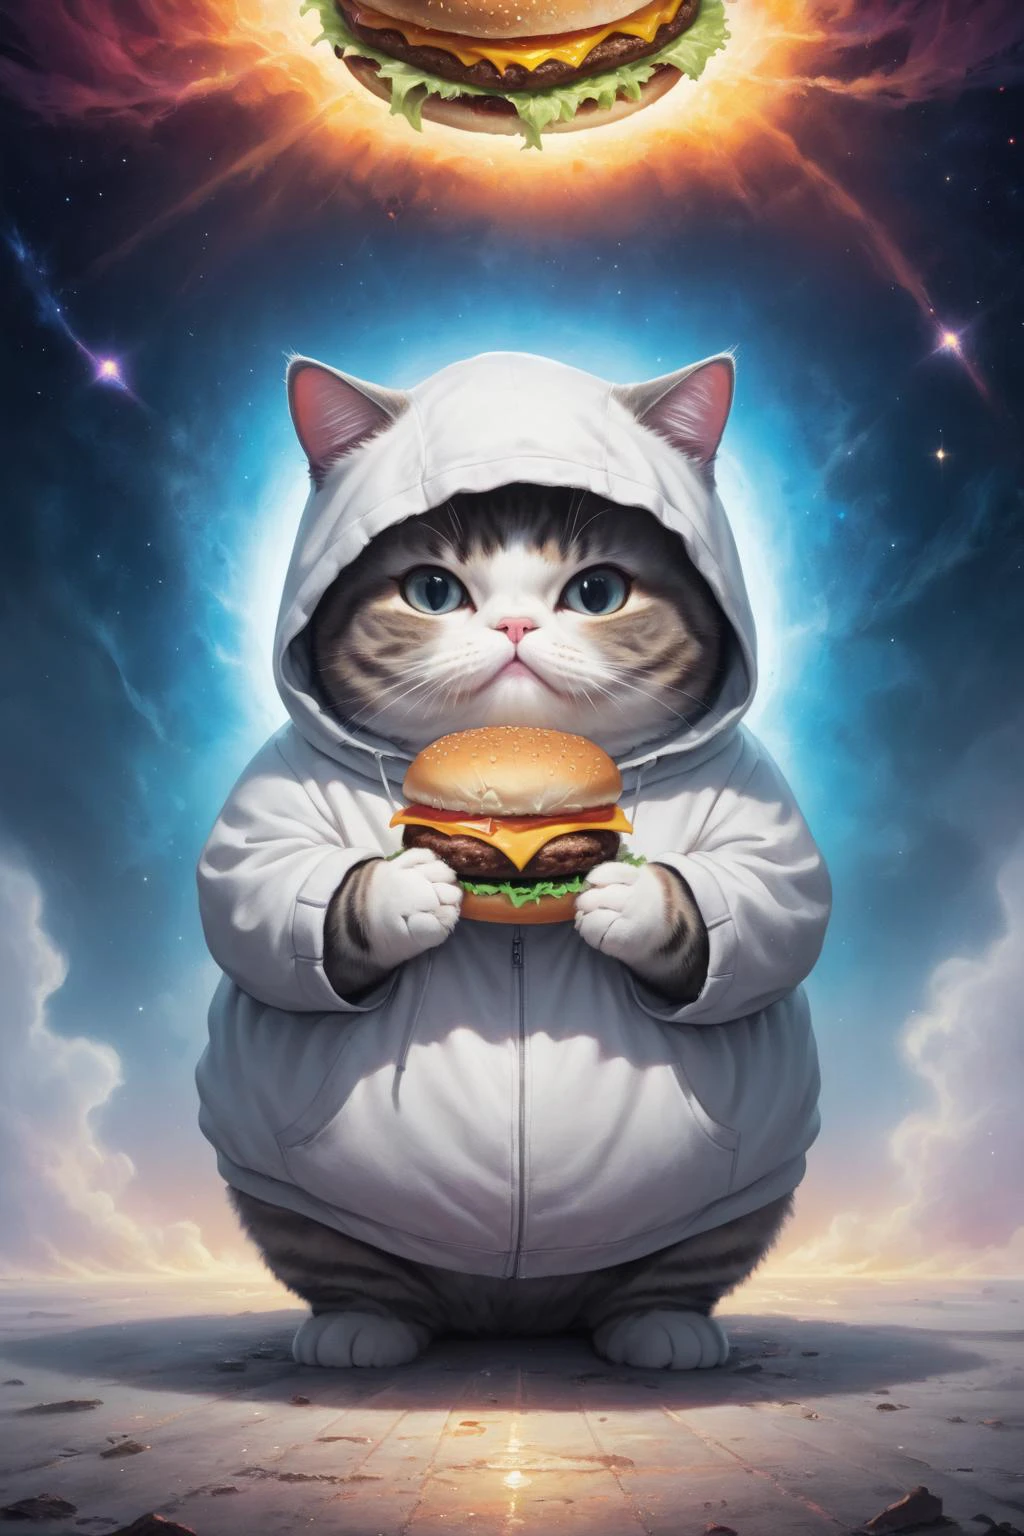 космическое полотно,(Антиутопический фон:1.3), безупречный, чистый, шедевр, картина пухлого кота, носить толстовку, держит гамбургер, легкий туман,   